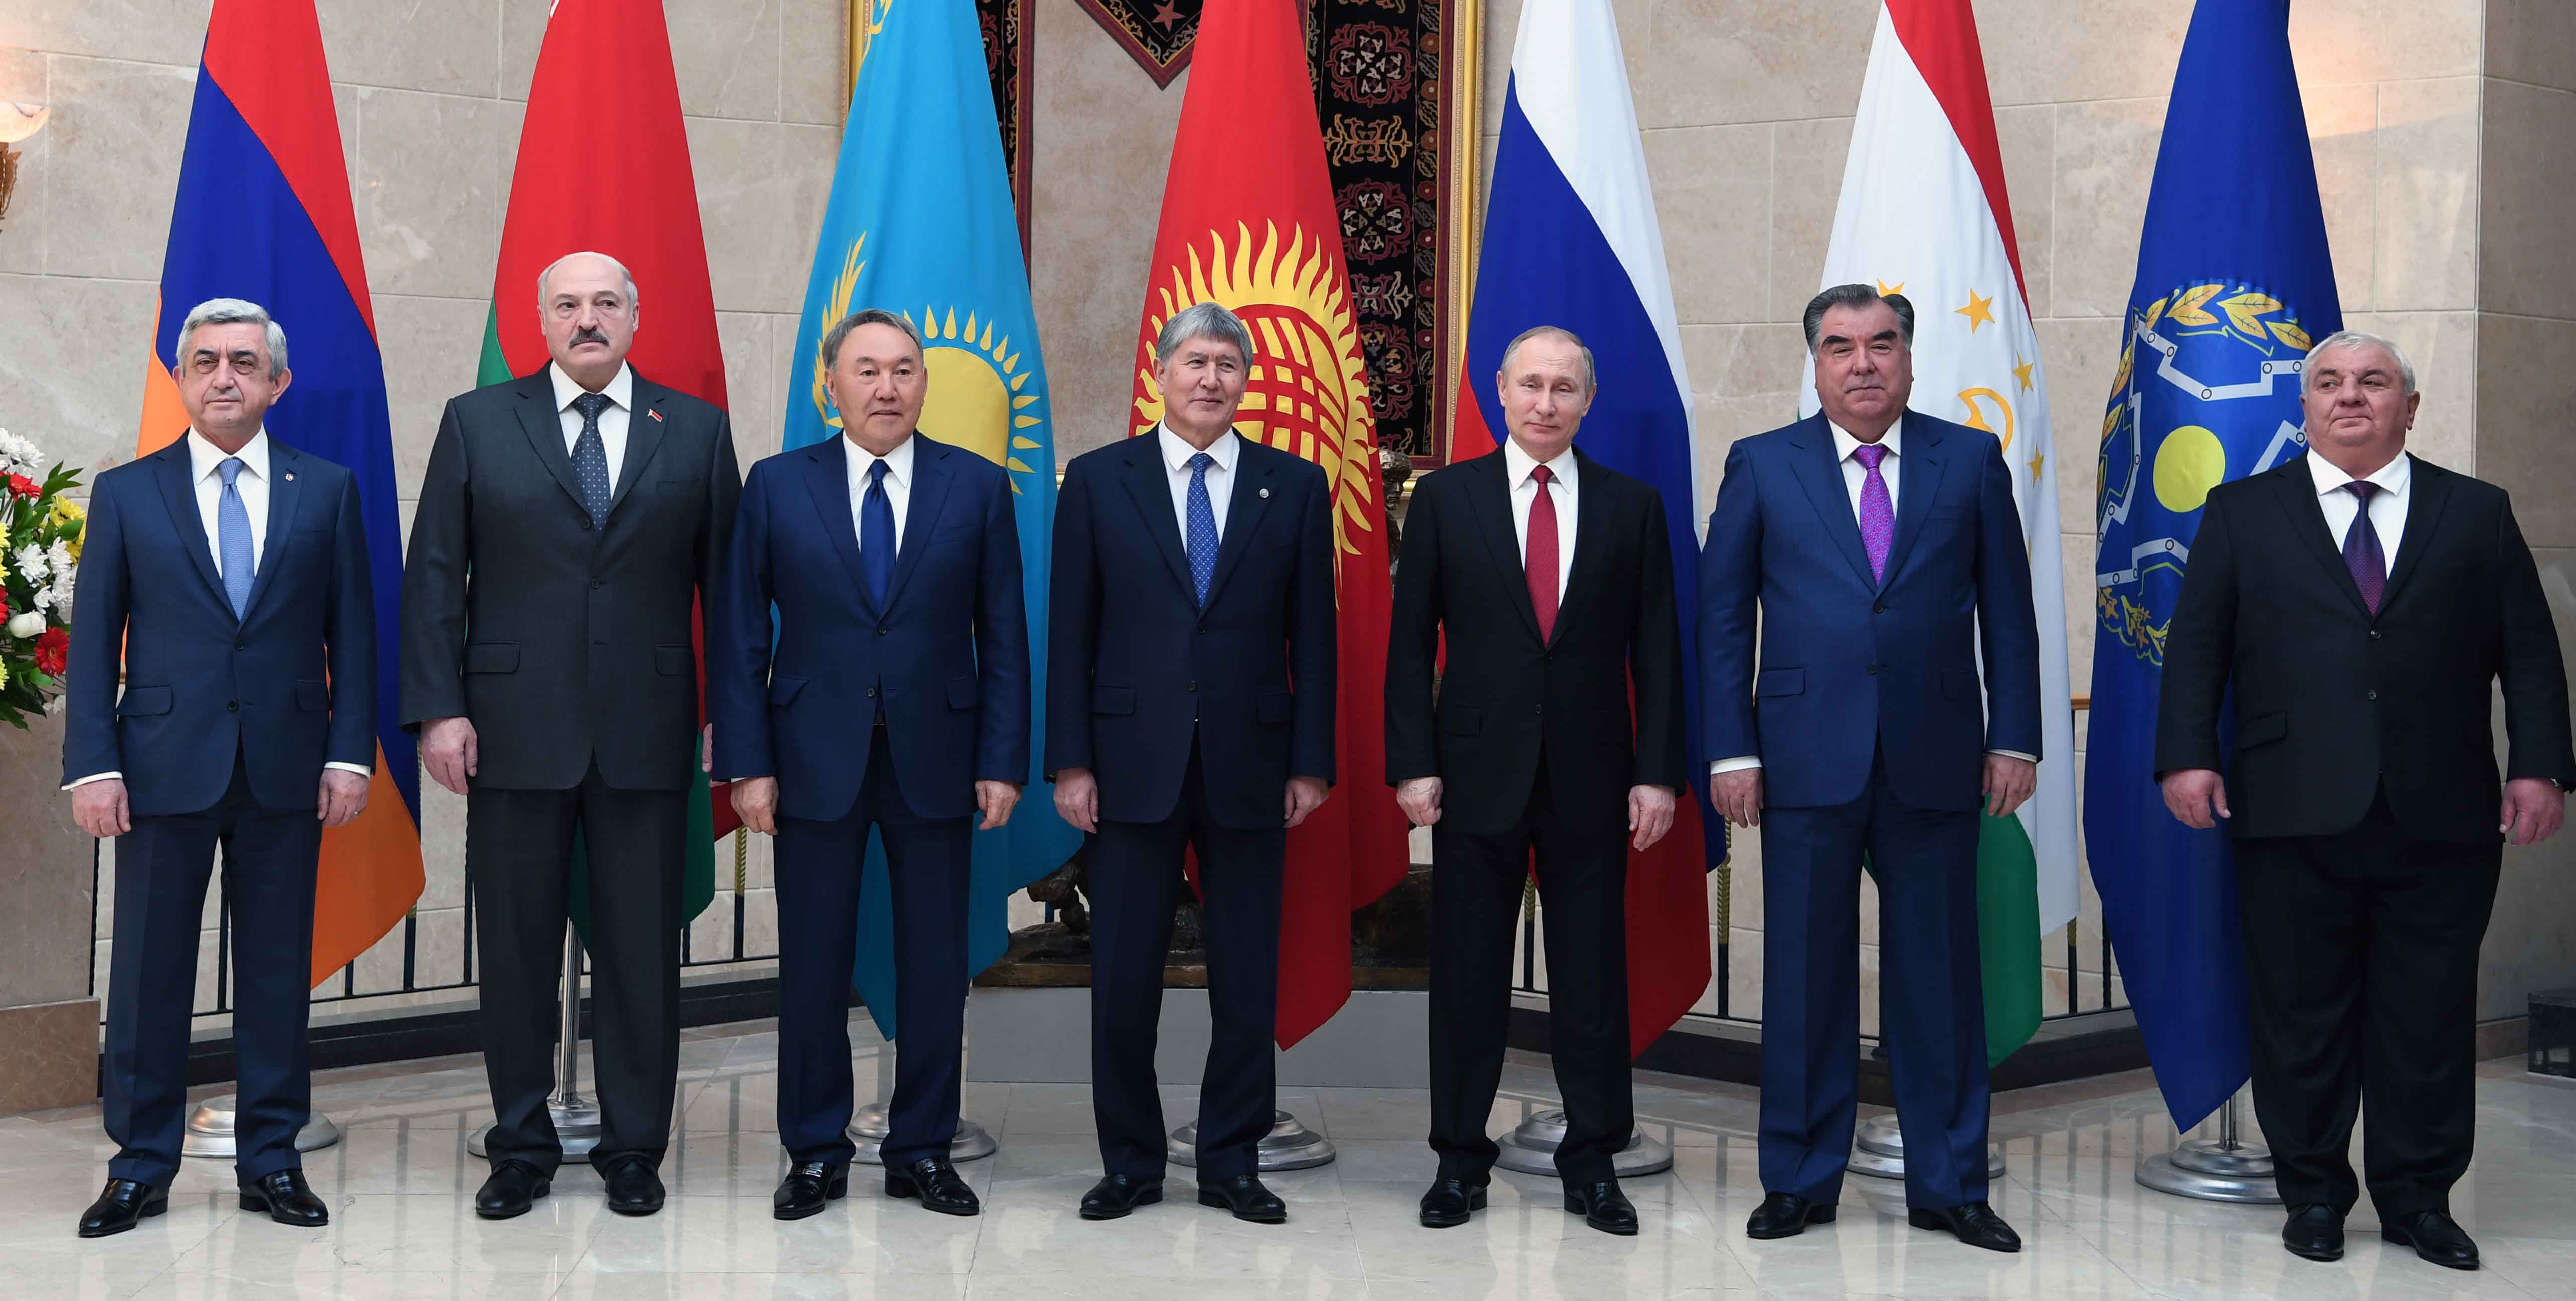 Нурсултан Назарбаев принял участие в заседании Высшего Евразийского экономического совета  